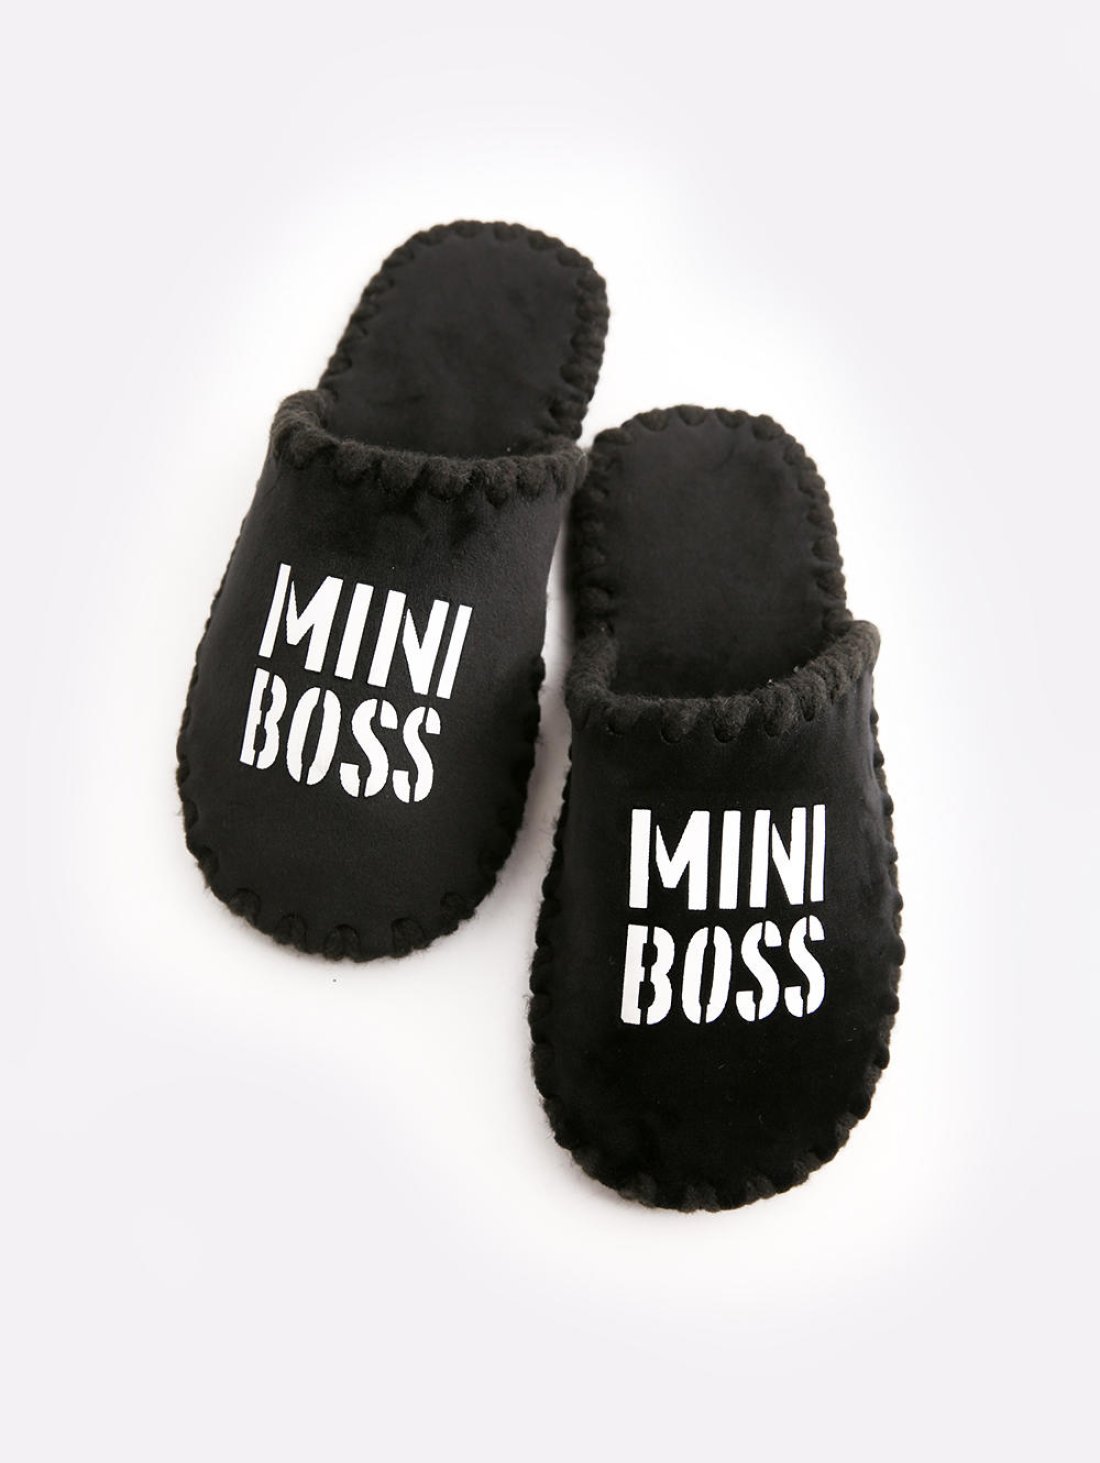 Чоловічі домашні капці Класичні Mini Boss закриті Чорні - 987 - товари що змінюють свідомість